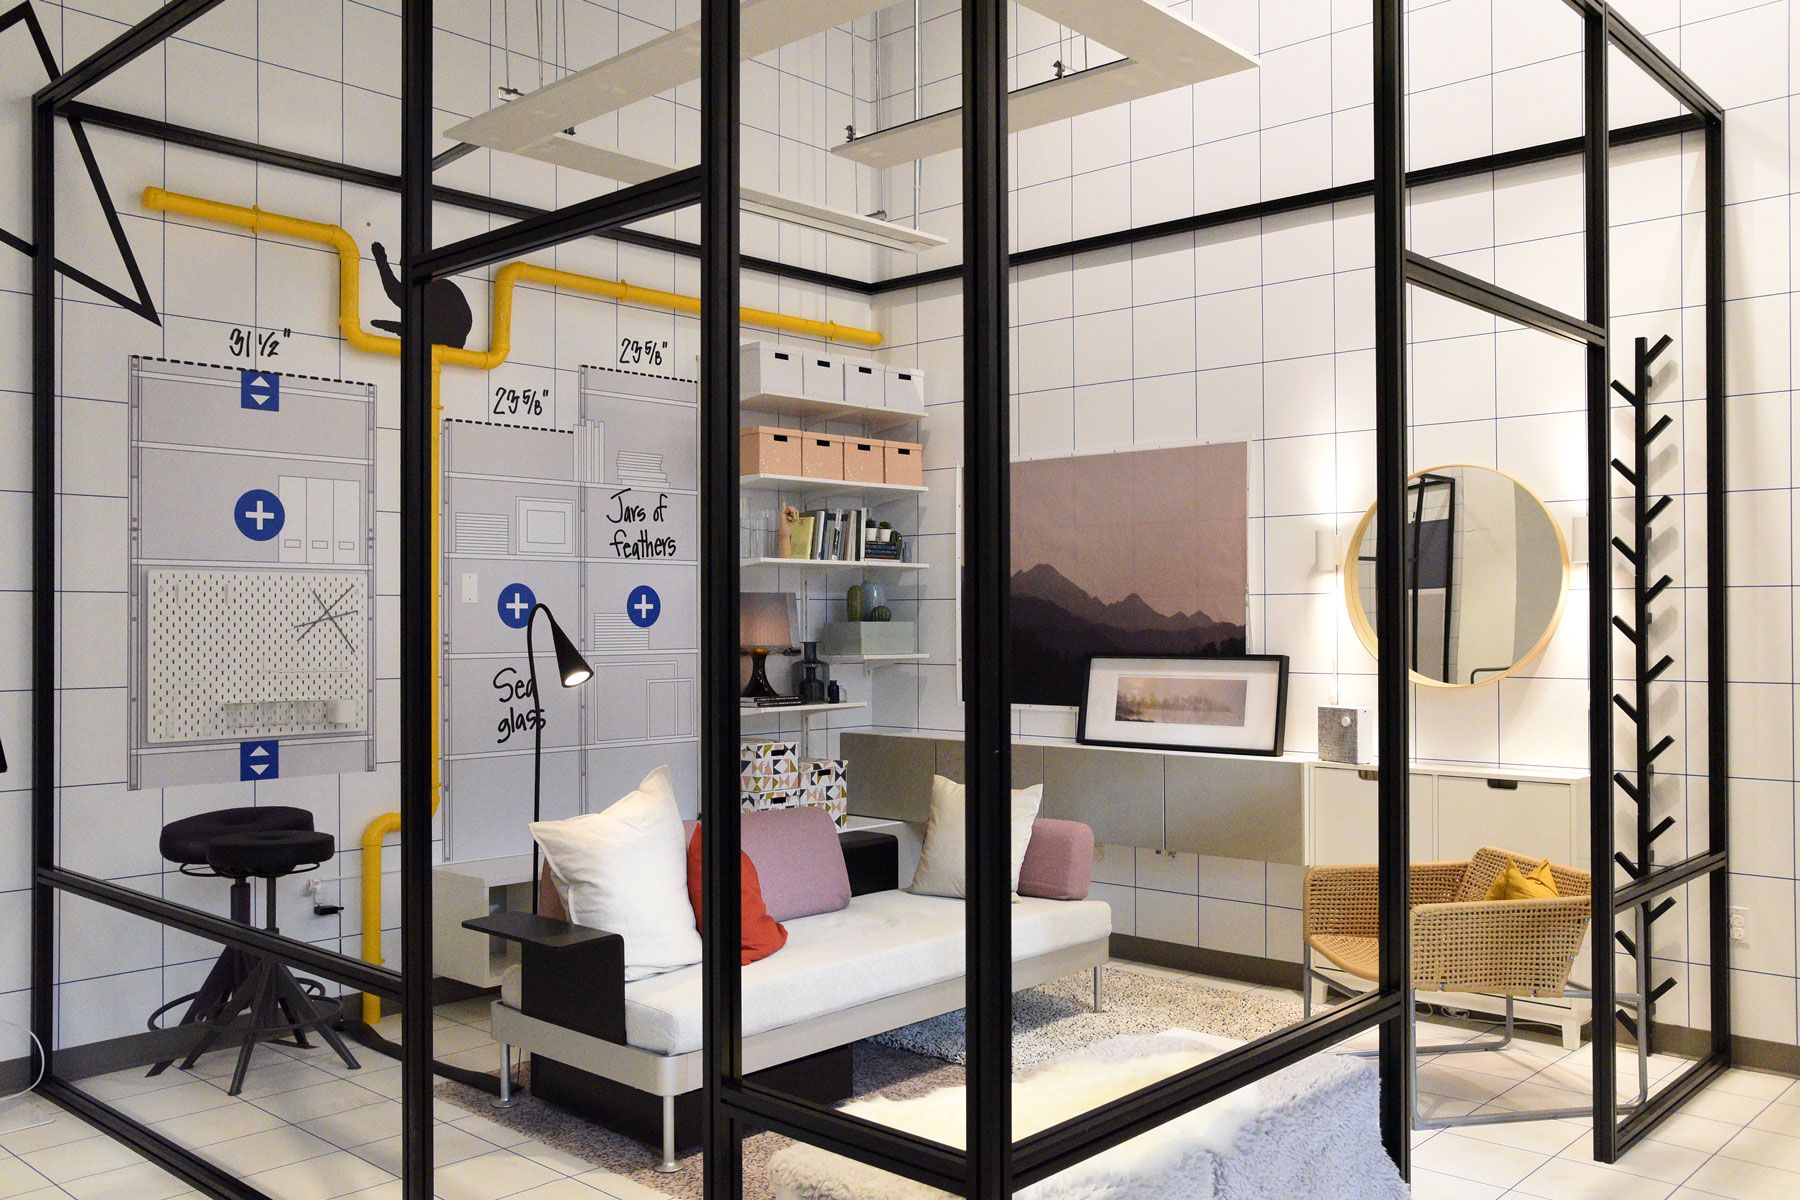 IKEA avaa uuden tyyppisen myymälän suurimmissa kaupungeissa - tässä voit odottaa